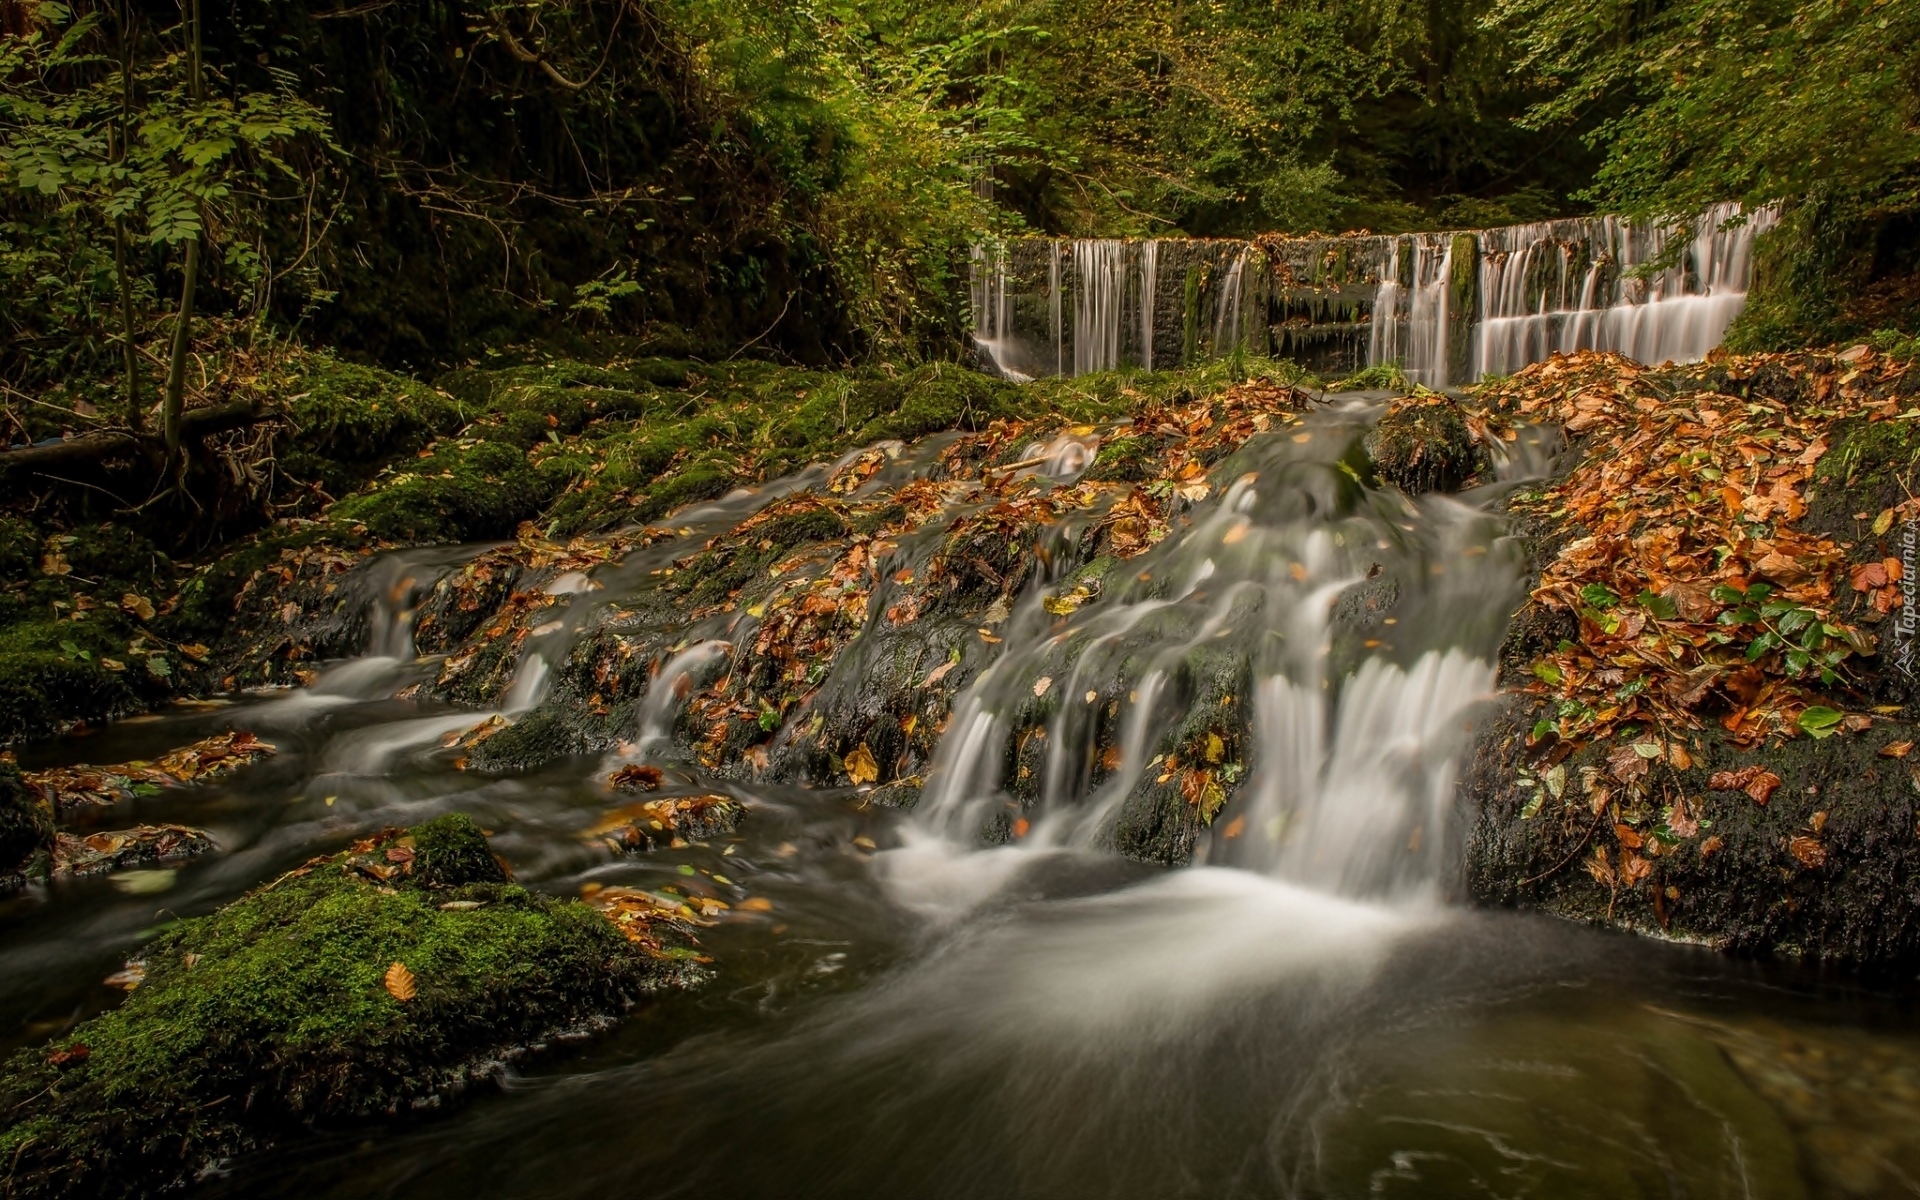 Wodospad Stock Ghyll Force, Kaskada, Rzeka River Rothay, Liście, Jesień, Miejscowość Ambleside, Kumbria, Anglia